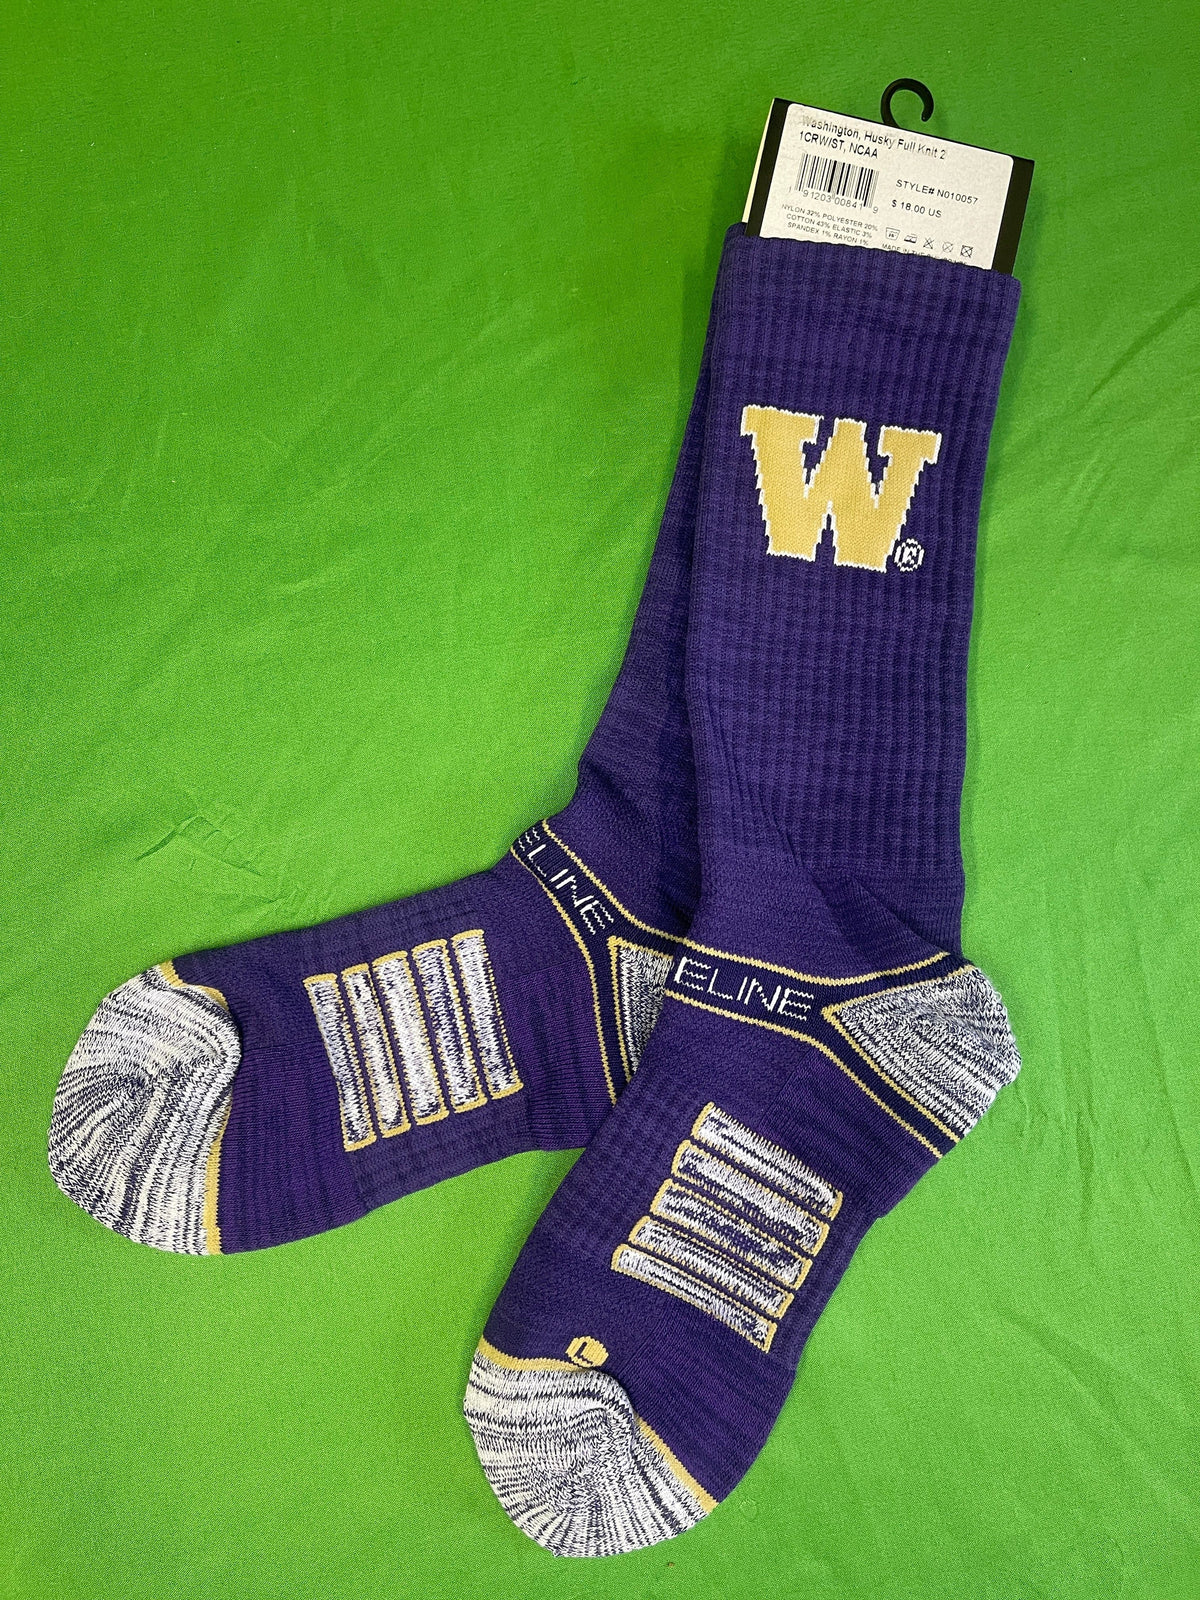 NCAA Washington Huskies Purple Socks Medium/Large NWT